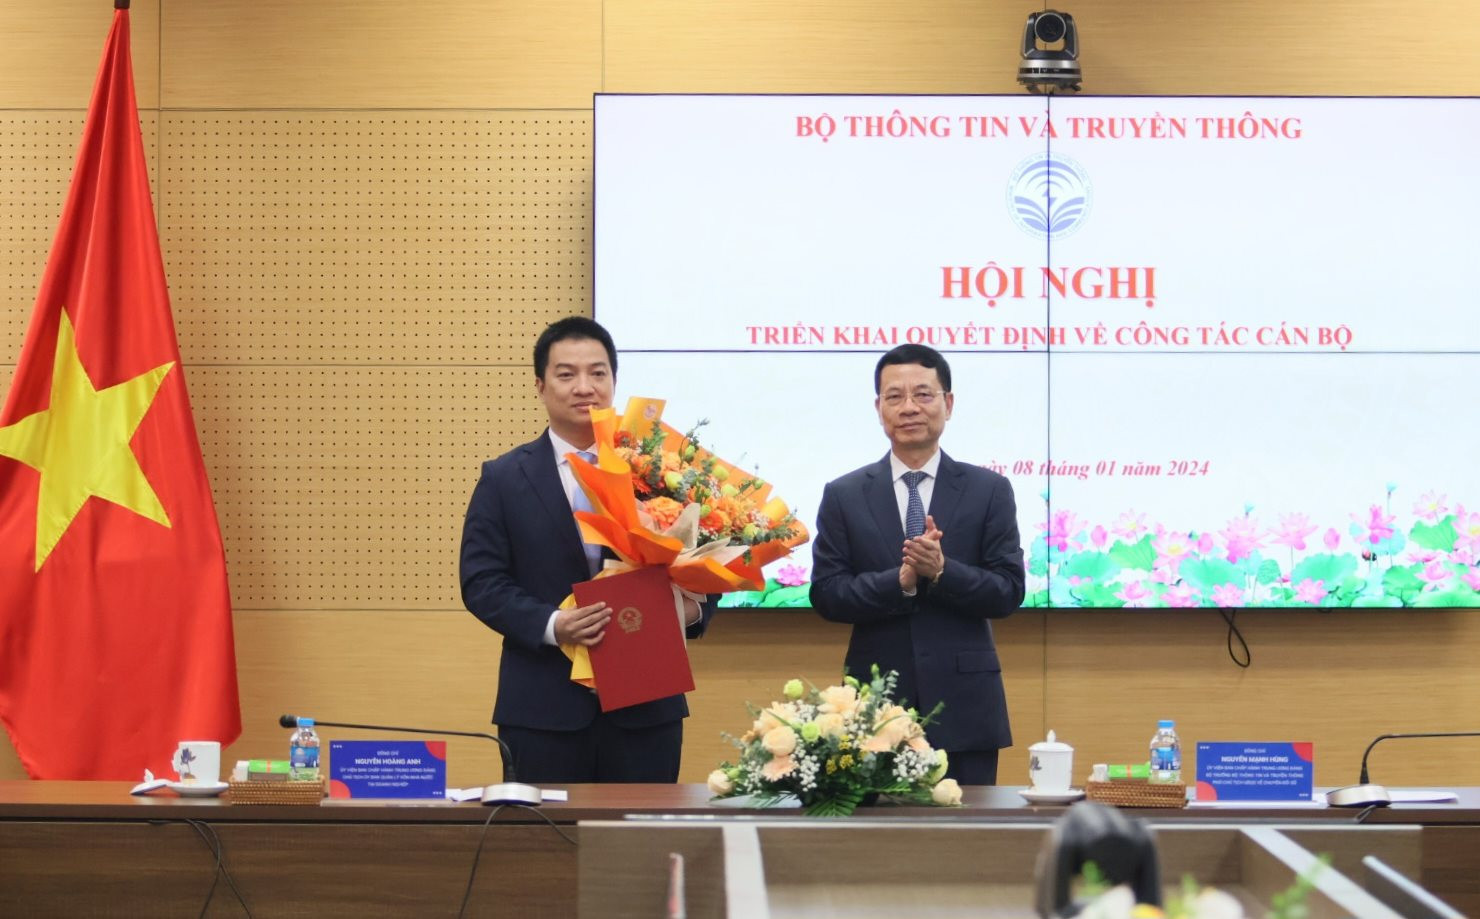 Bộ trưởng Nguyễn Mạnh Hùng trao các quyết định cán bộ cho ông Hồ Đức Thắng.